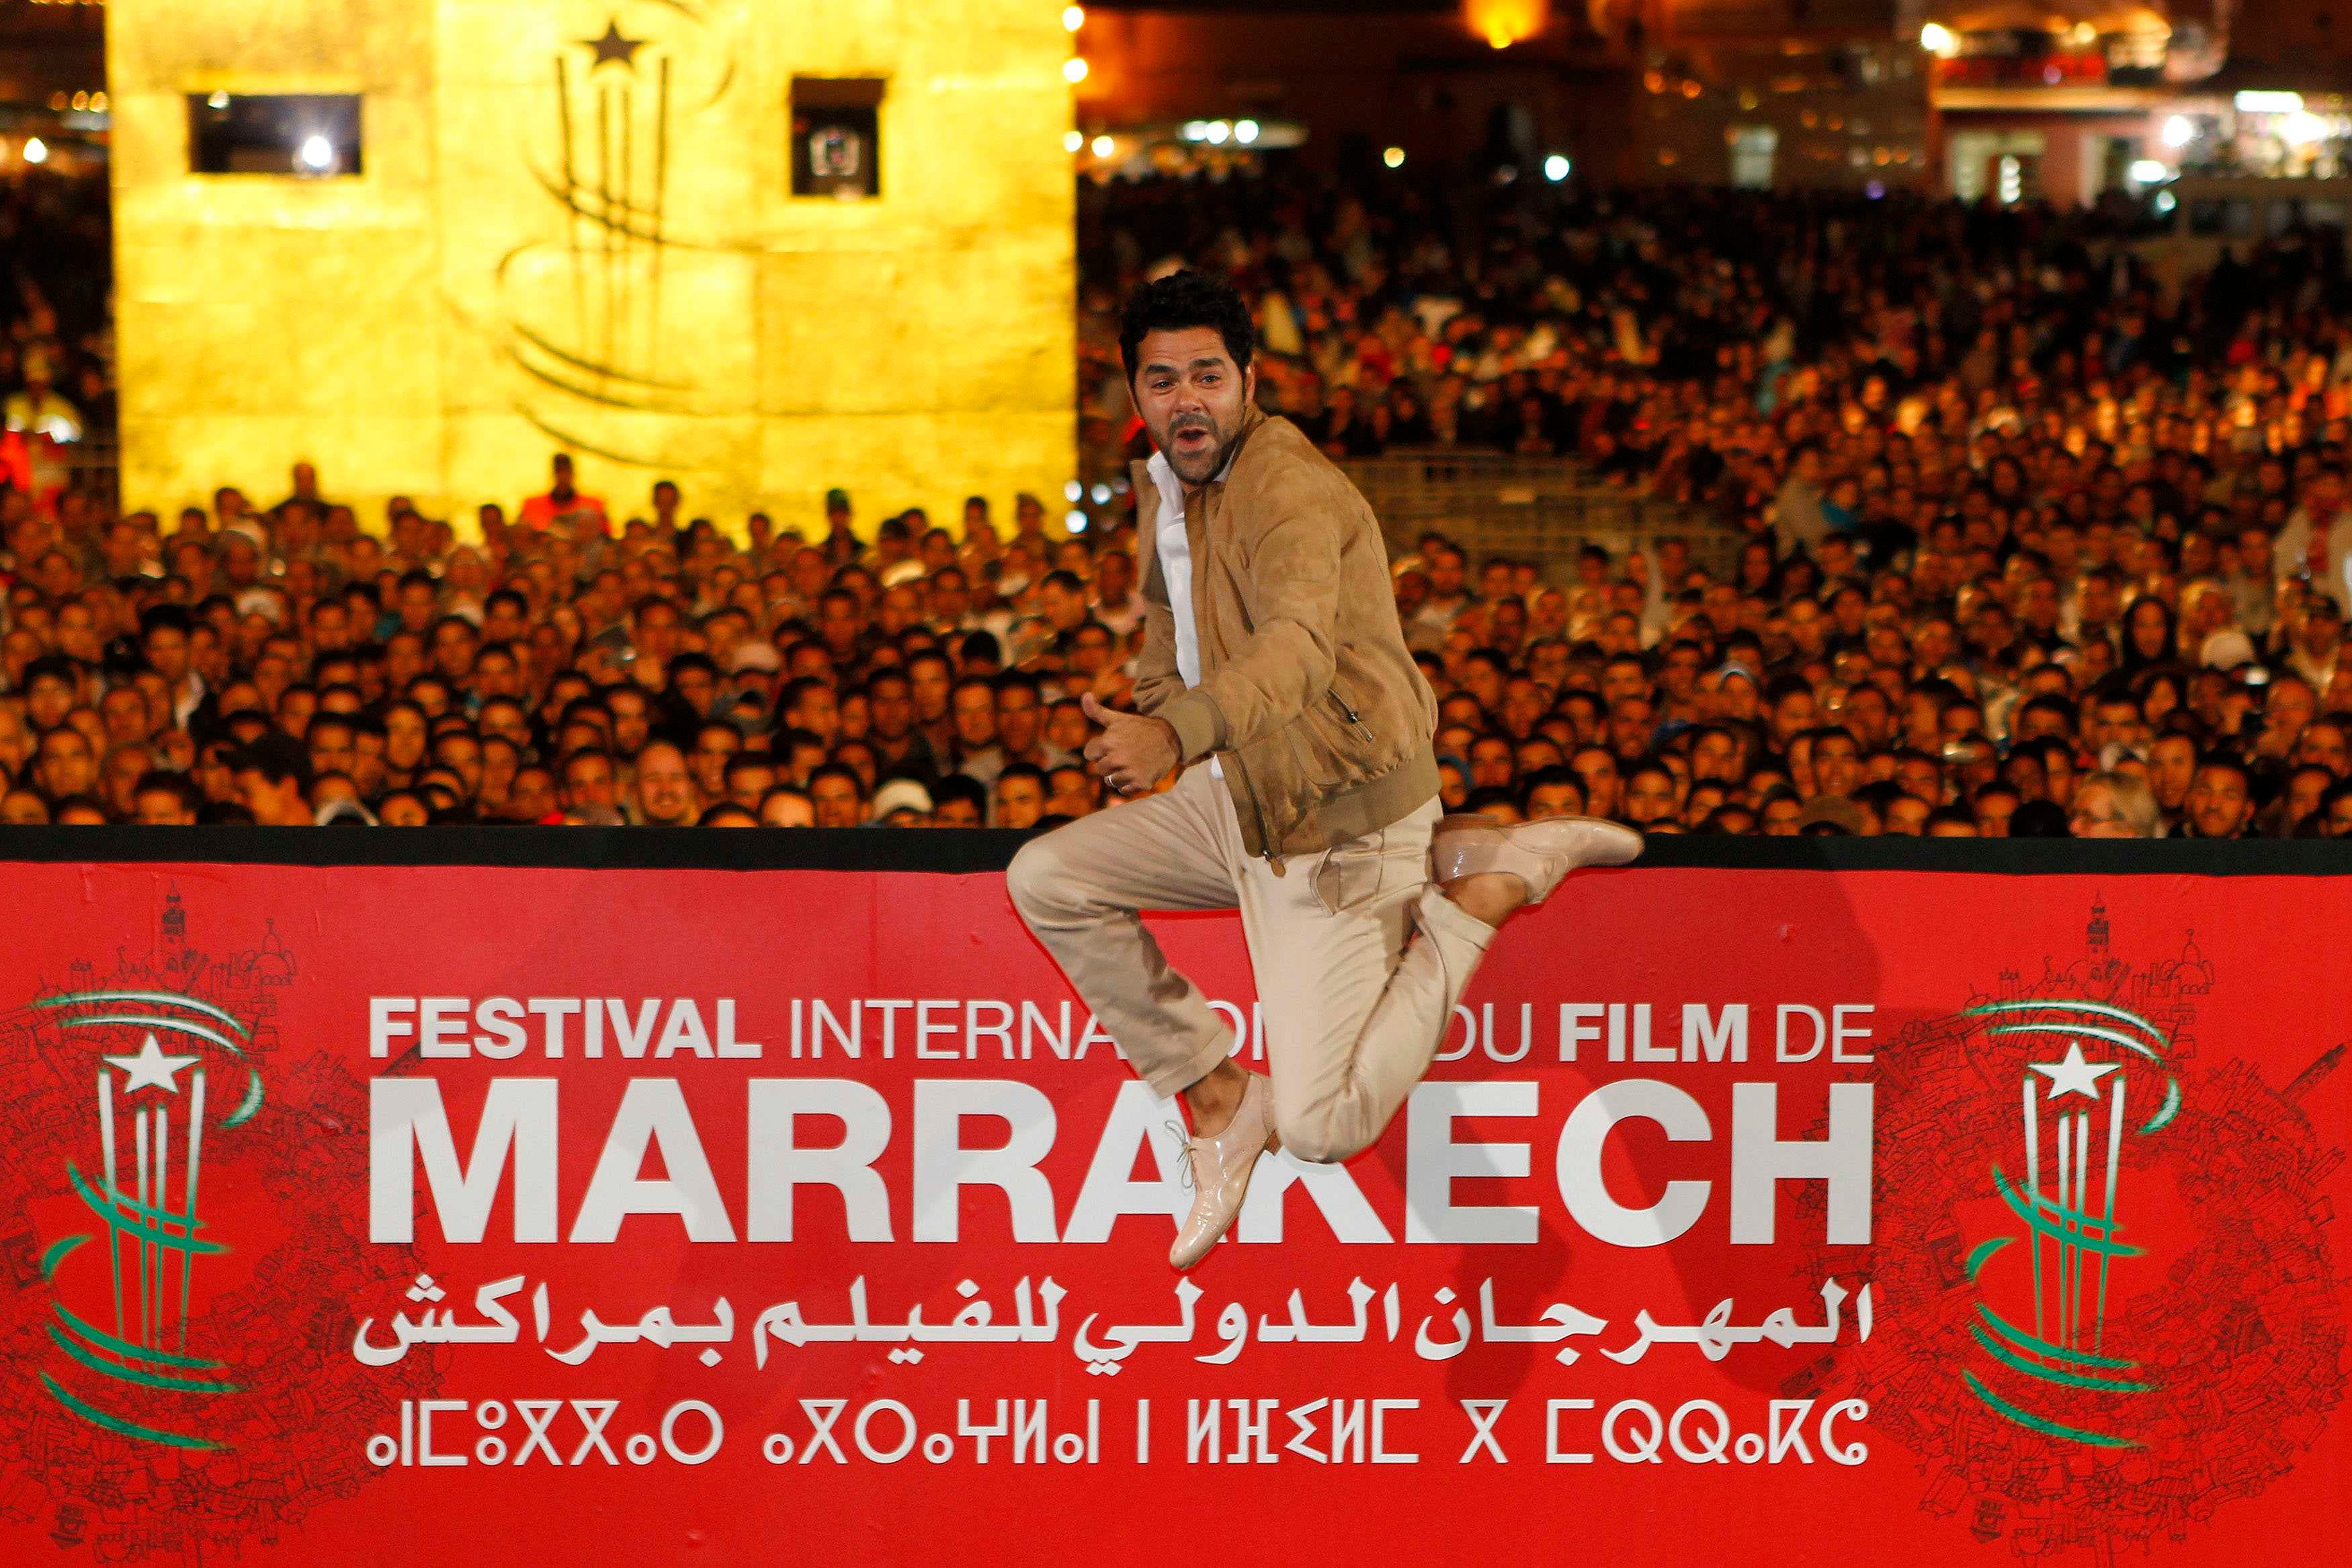 13th annual Marrakech International Film Festival Al Arabiya English